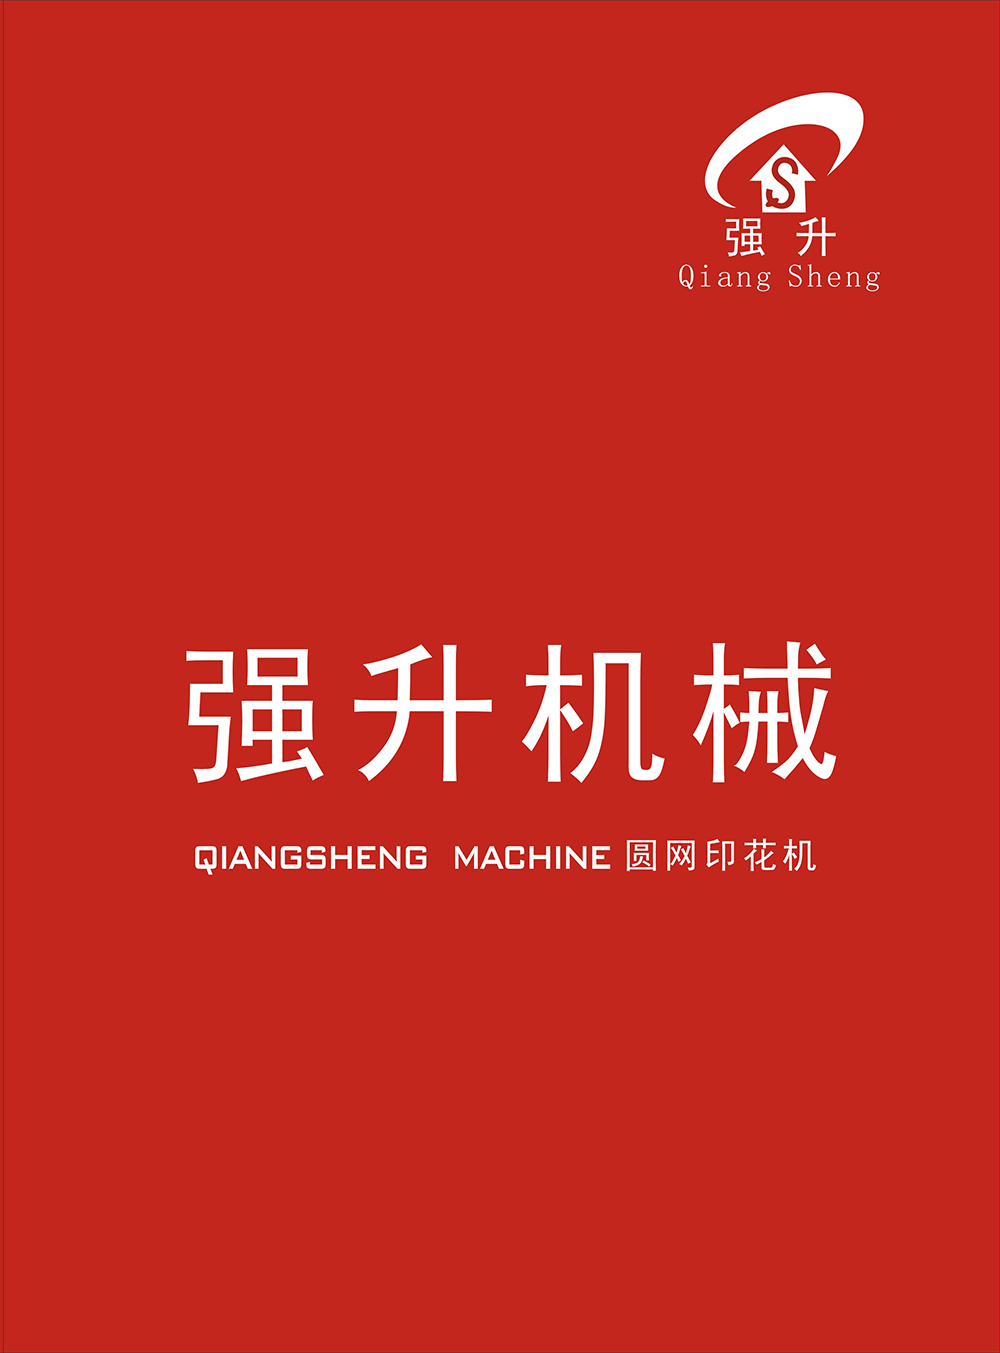 上海强升印染机械有限公司